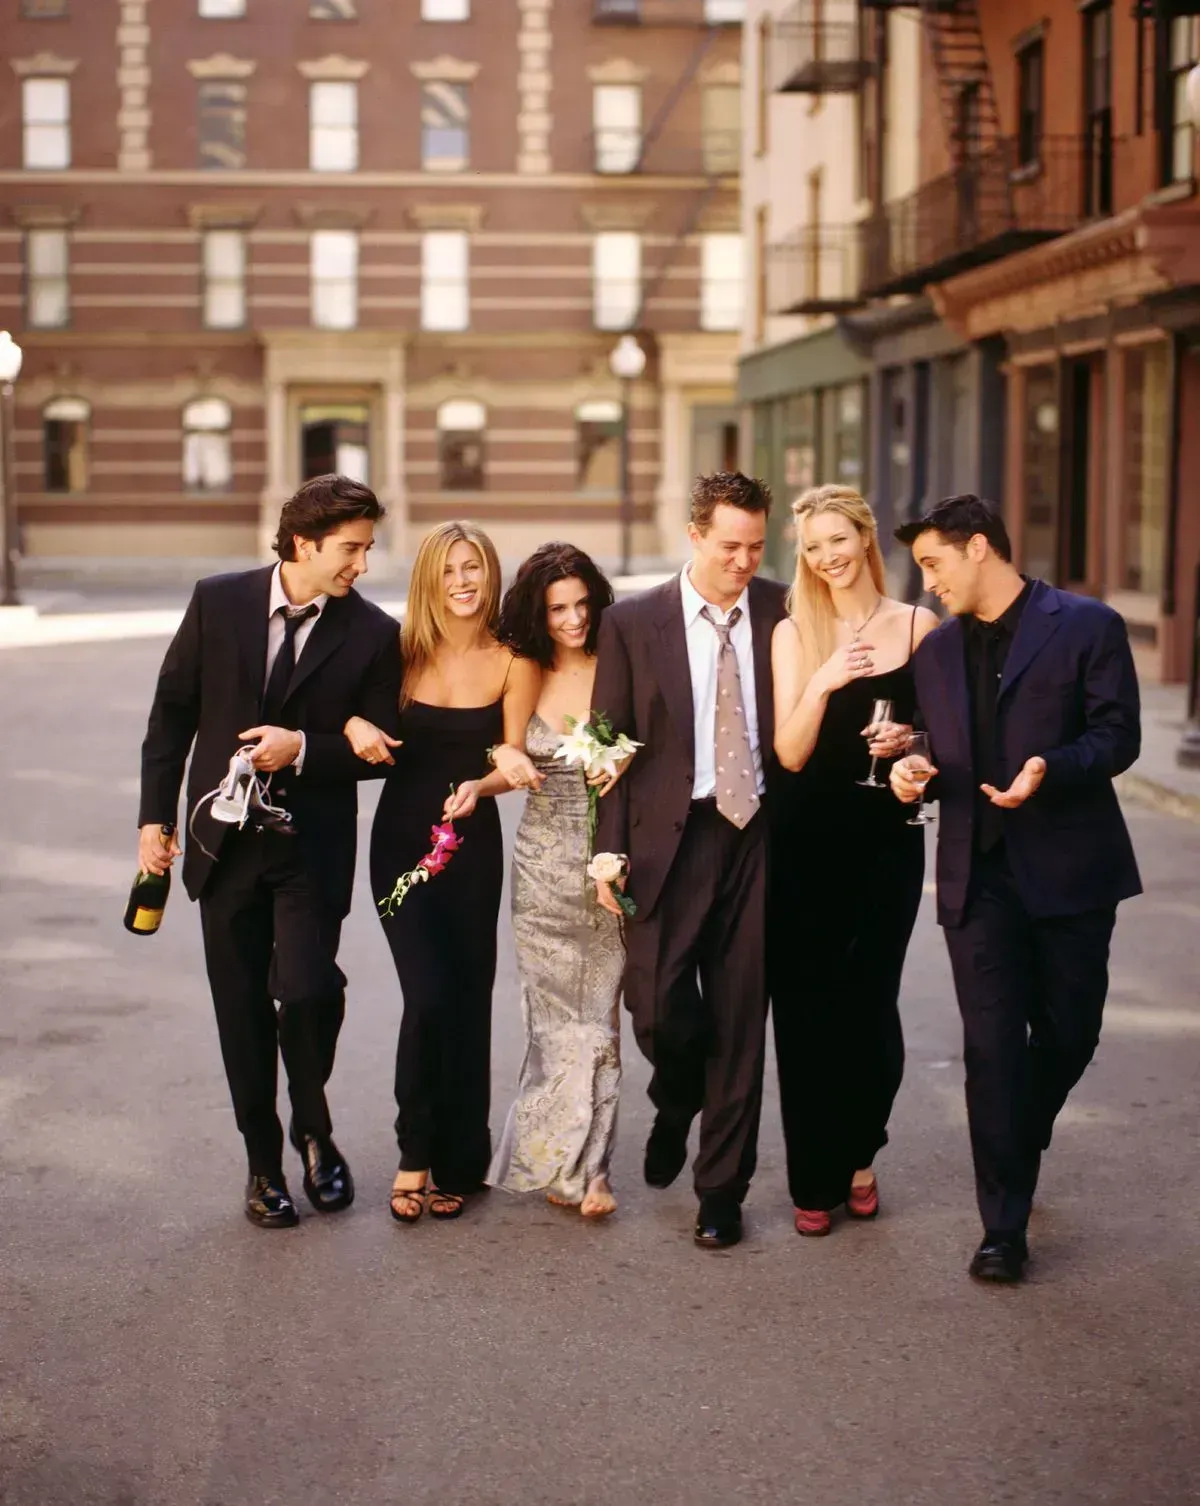 Les acteurs du casting de "Friends" | Photo : Getty Images